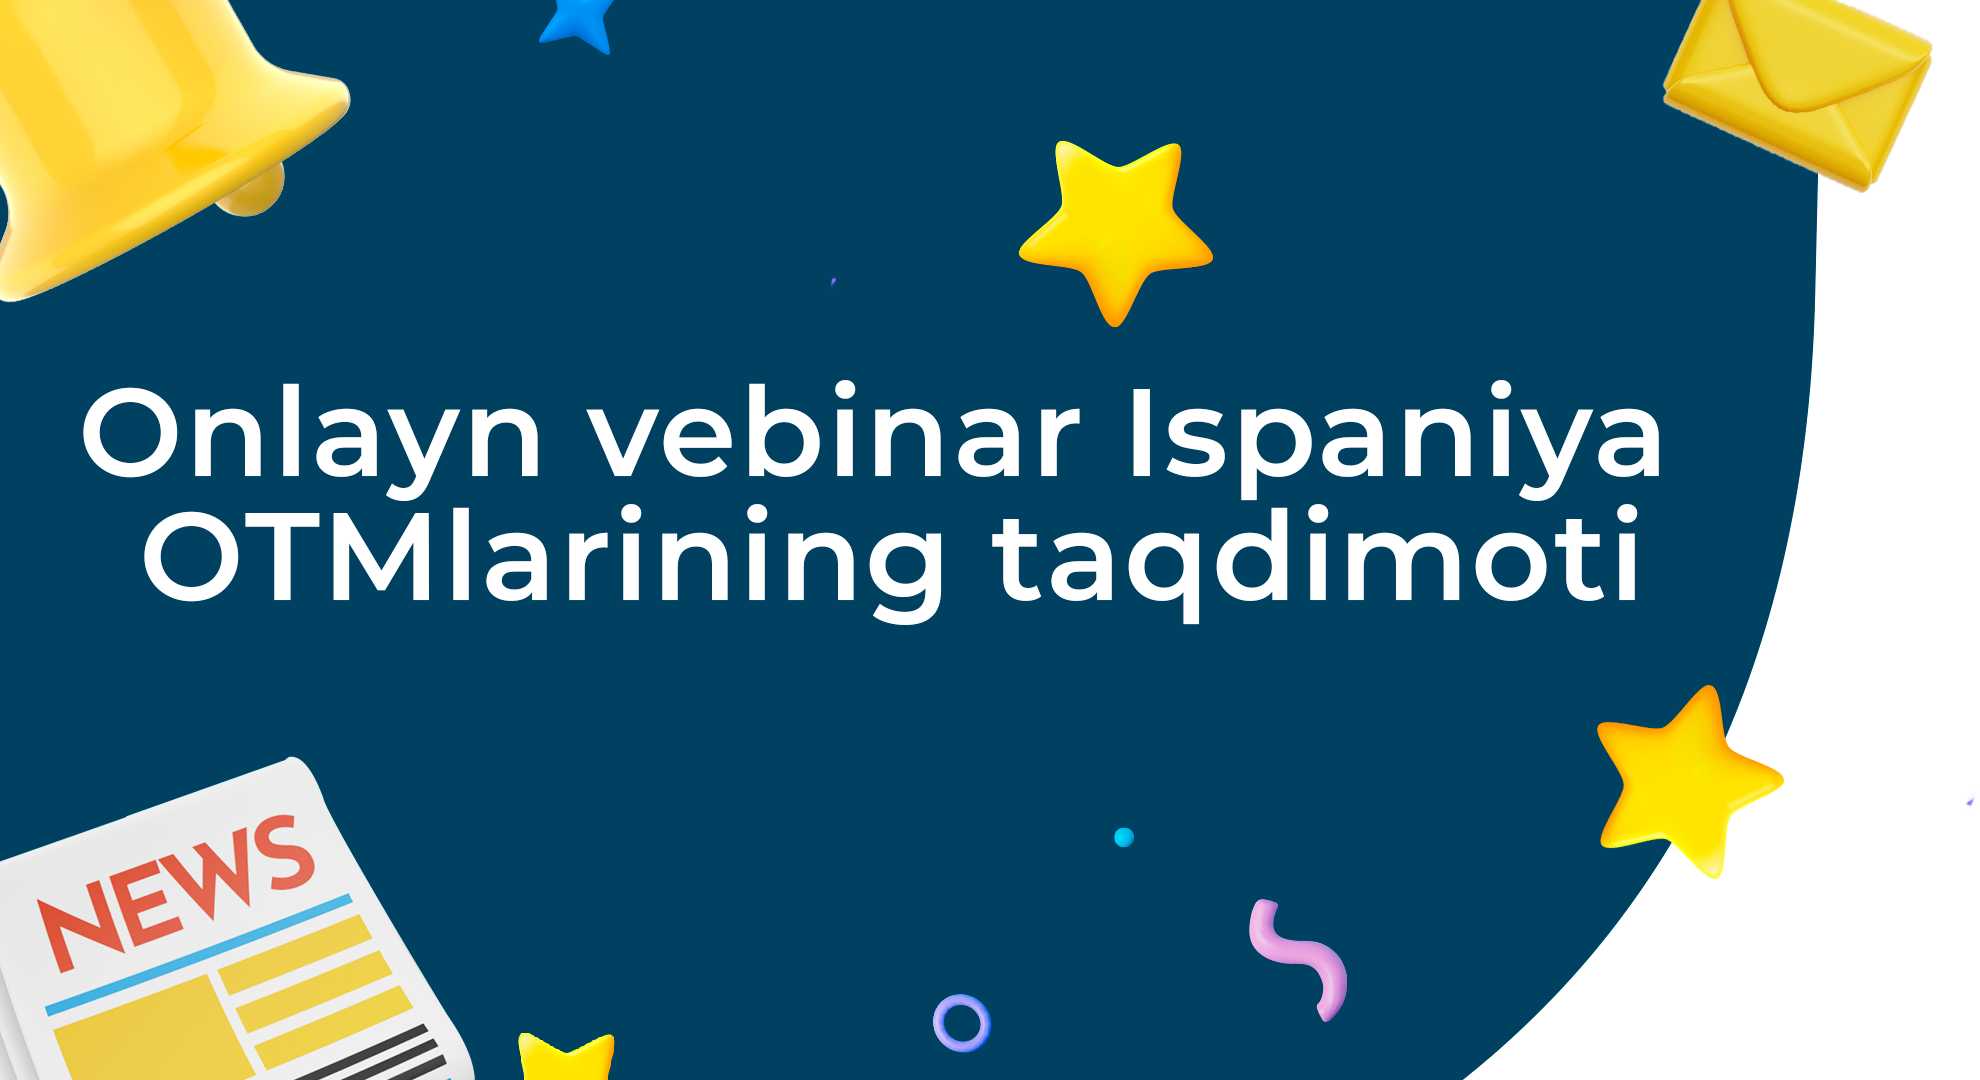 Онлайн-вебинар-презентация испанских вузов | tkti.uz